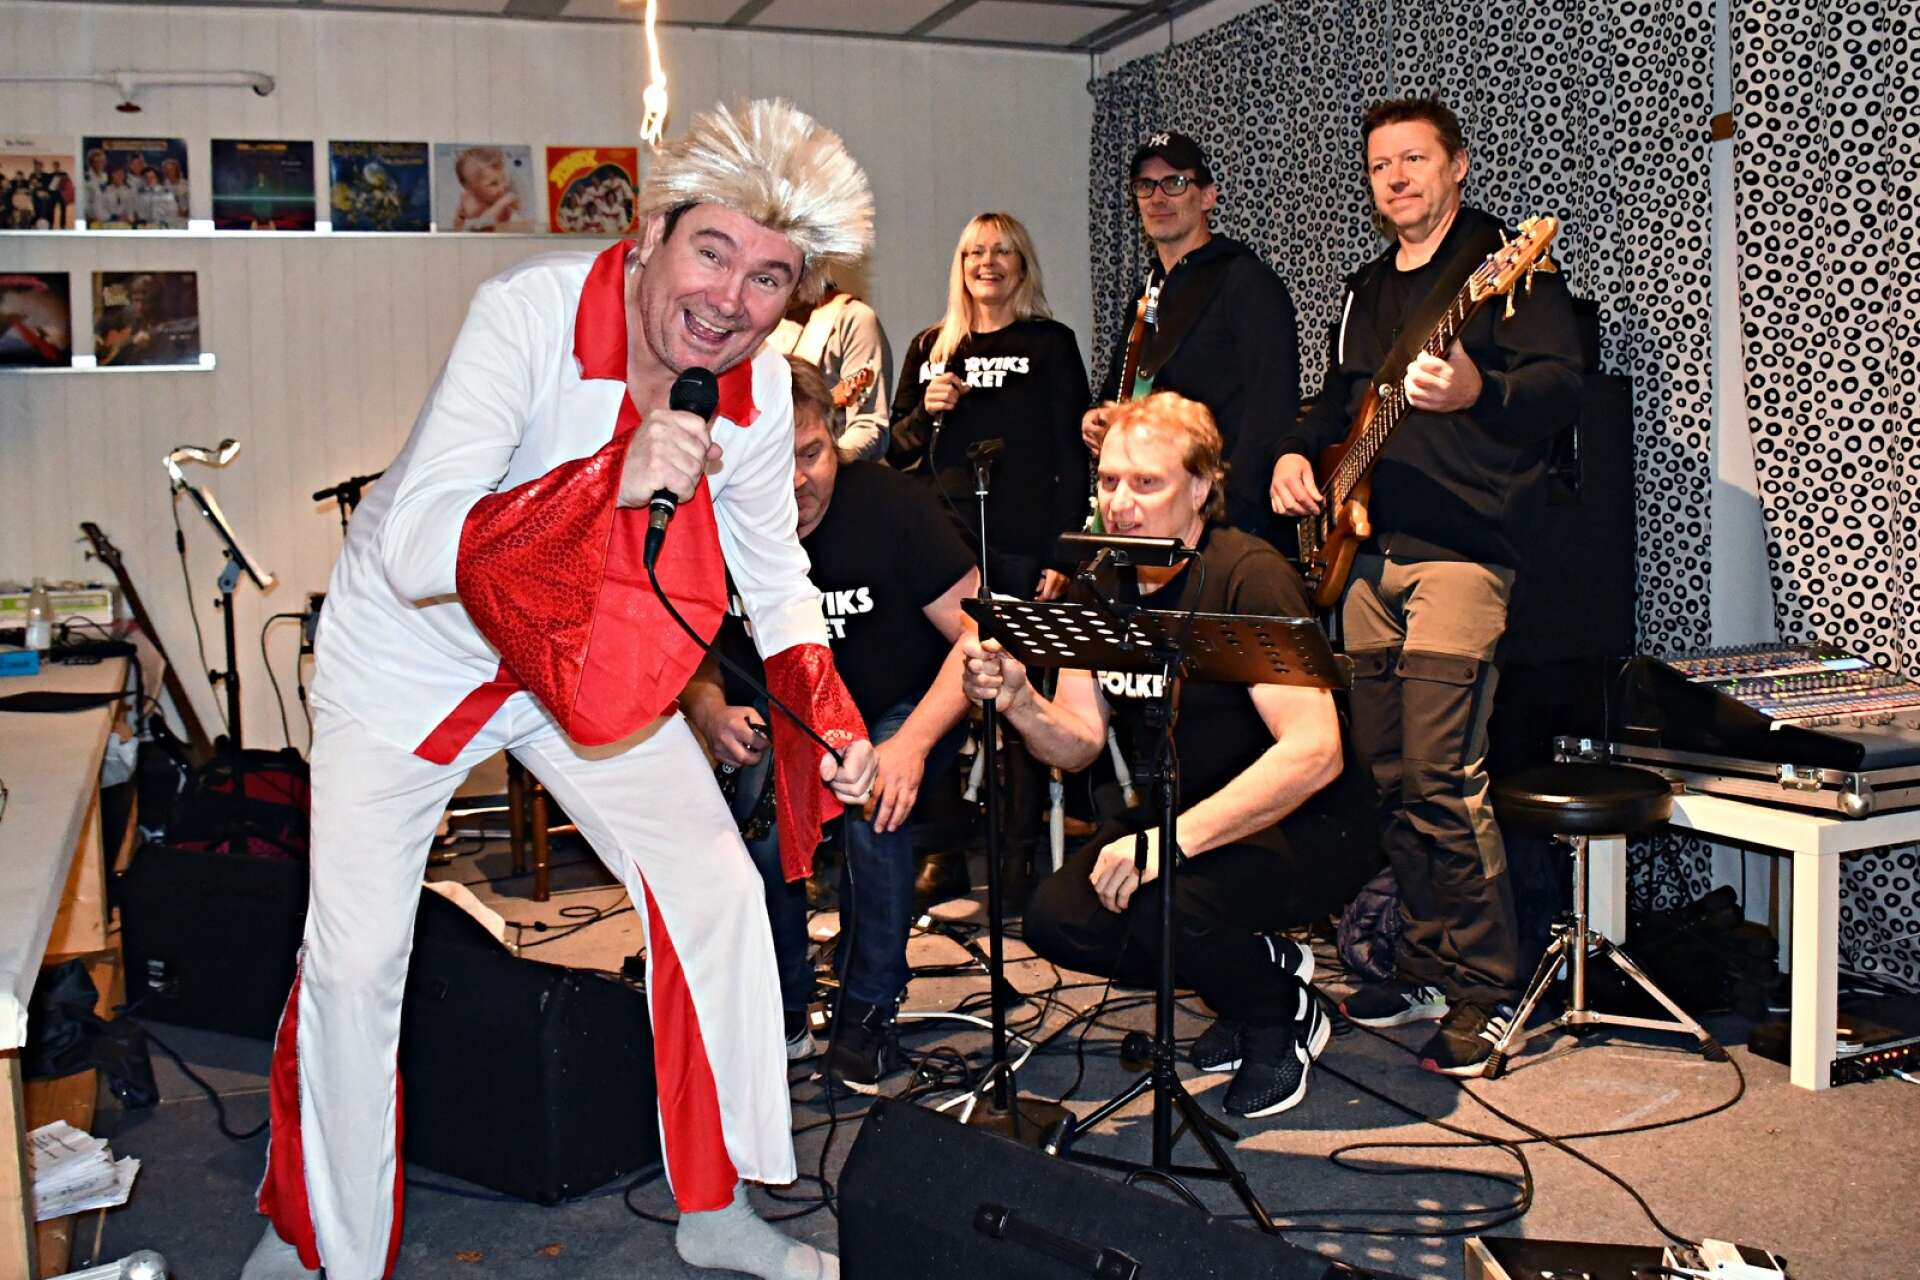 Ämterviksfolket är en musikgrupp från Västra Ämtervik som gillar att showa för publiken. Efter en paus 2020, var det dags igen, i samband med årets julbord.